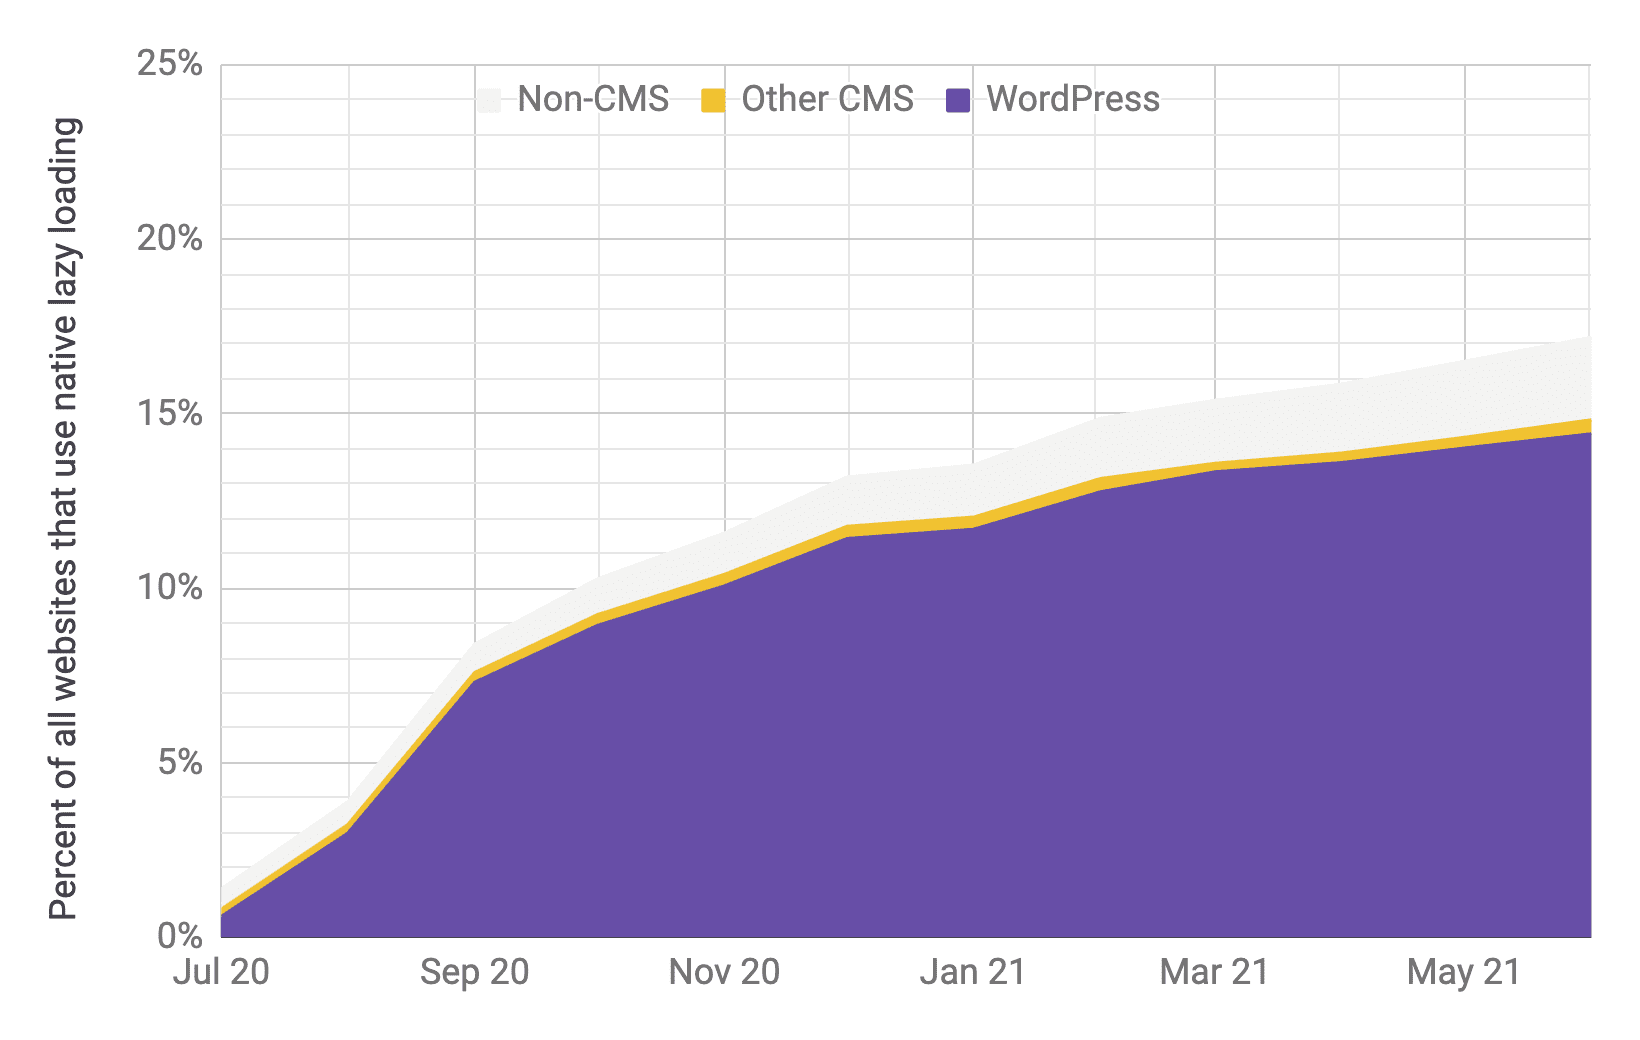 Bir önceki grafiğe benzer oranlarda, diğer içerik yönetim sistemlerine ve içerik yönetim sistemi olmayan platformlara kıyasla baskın olarak WordPress&#39;in benimsendiğini gösteren zaman serisi grafiği. Toplam benimseme oranının Temmuz 2020 - Haziran 2021 arasında% 1&#39;den% 17&#39;ye hızlı bir şekilde arttığı gösteriliyor.